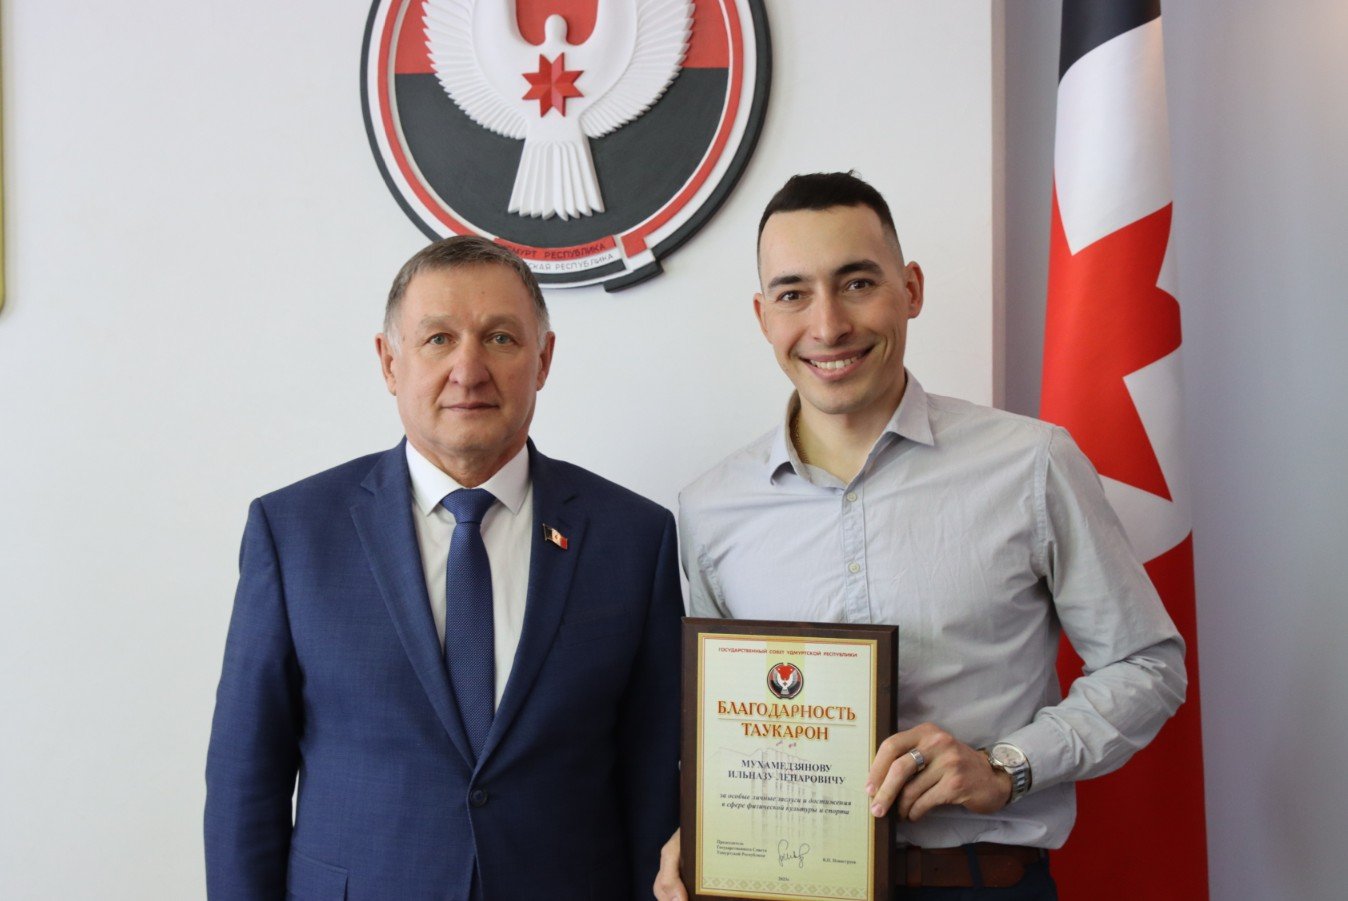 Биатлонист из Ижевска Ильназ Мухамедзянов получил Благодарность за особые личные заслуги и достижения в сфере спорта